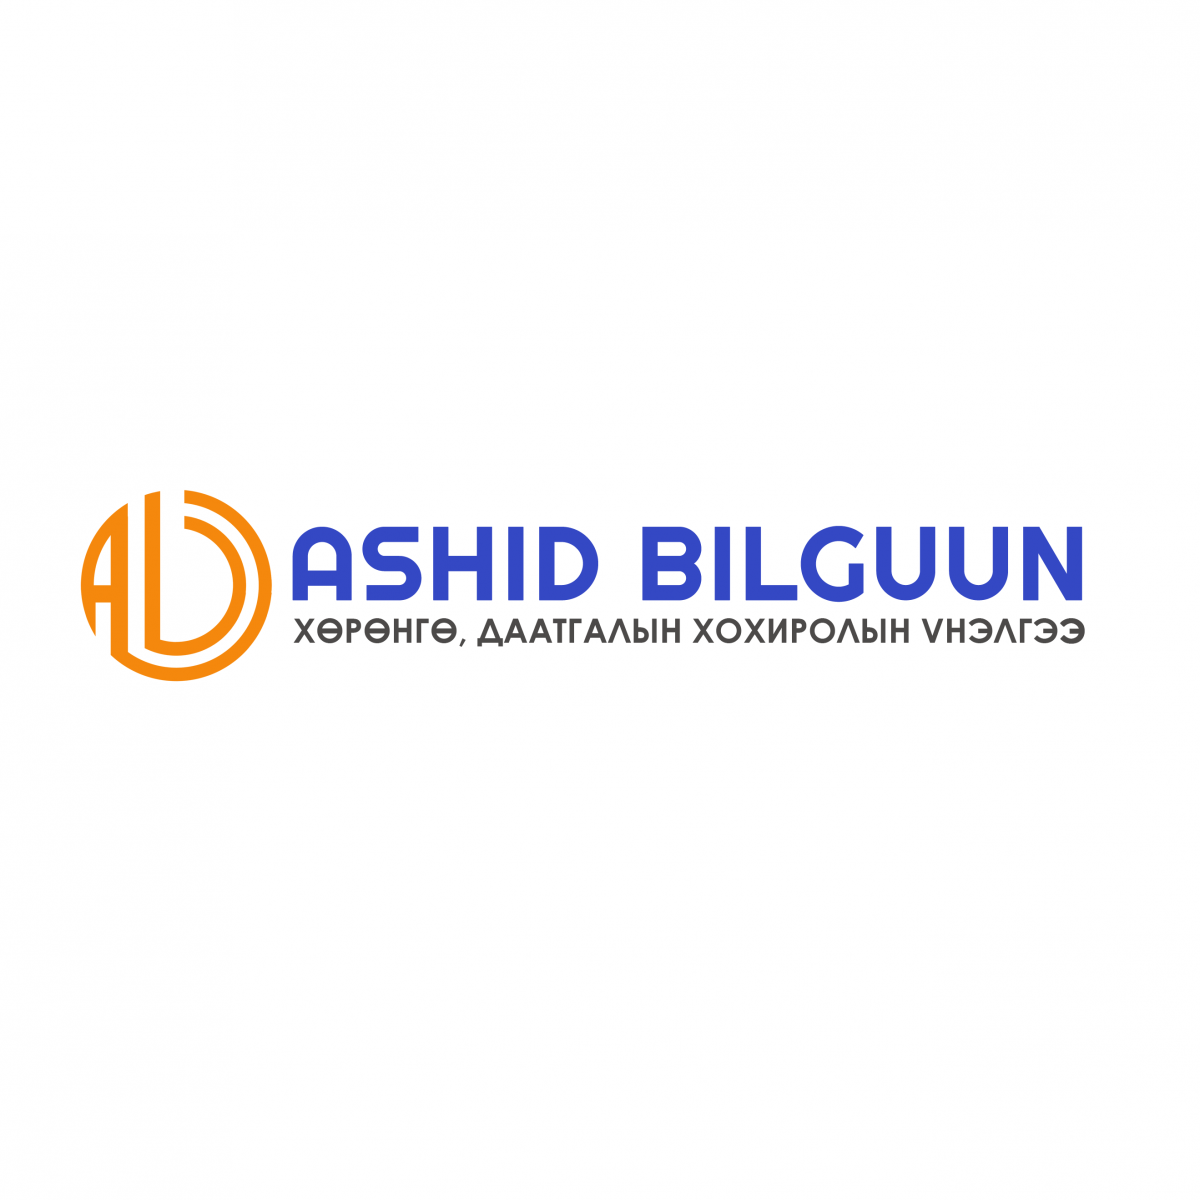 Ashid Bilguun LLC